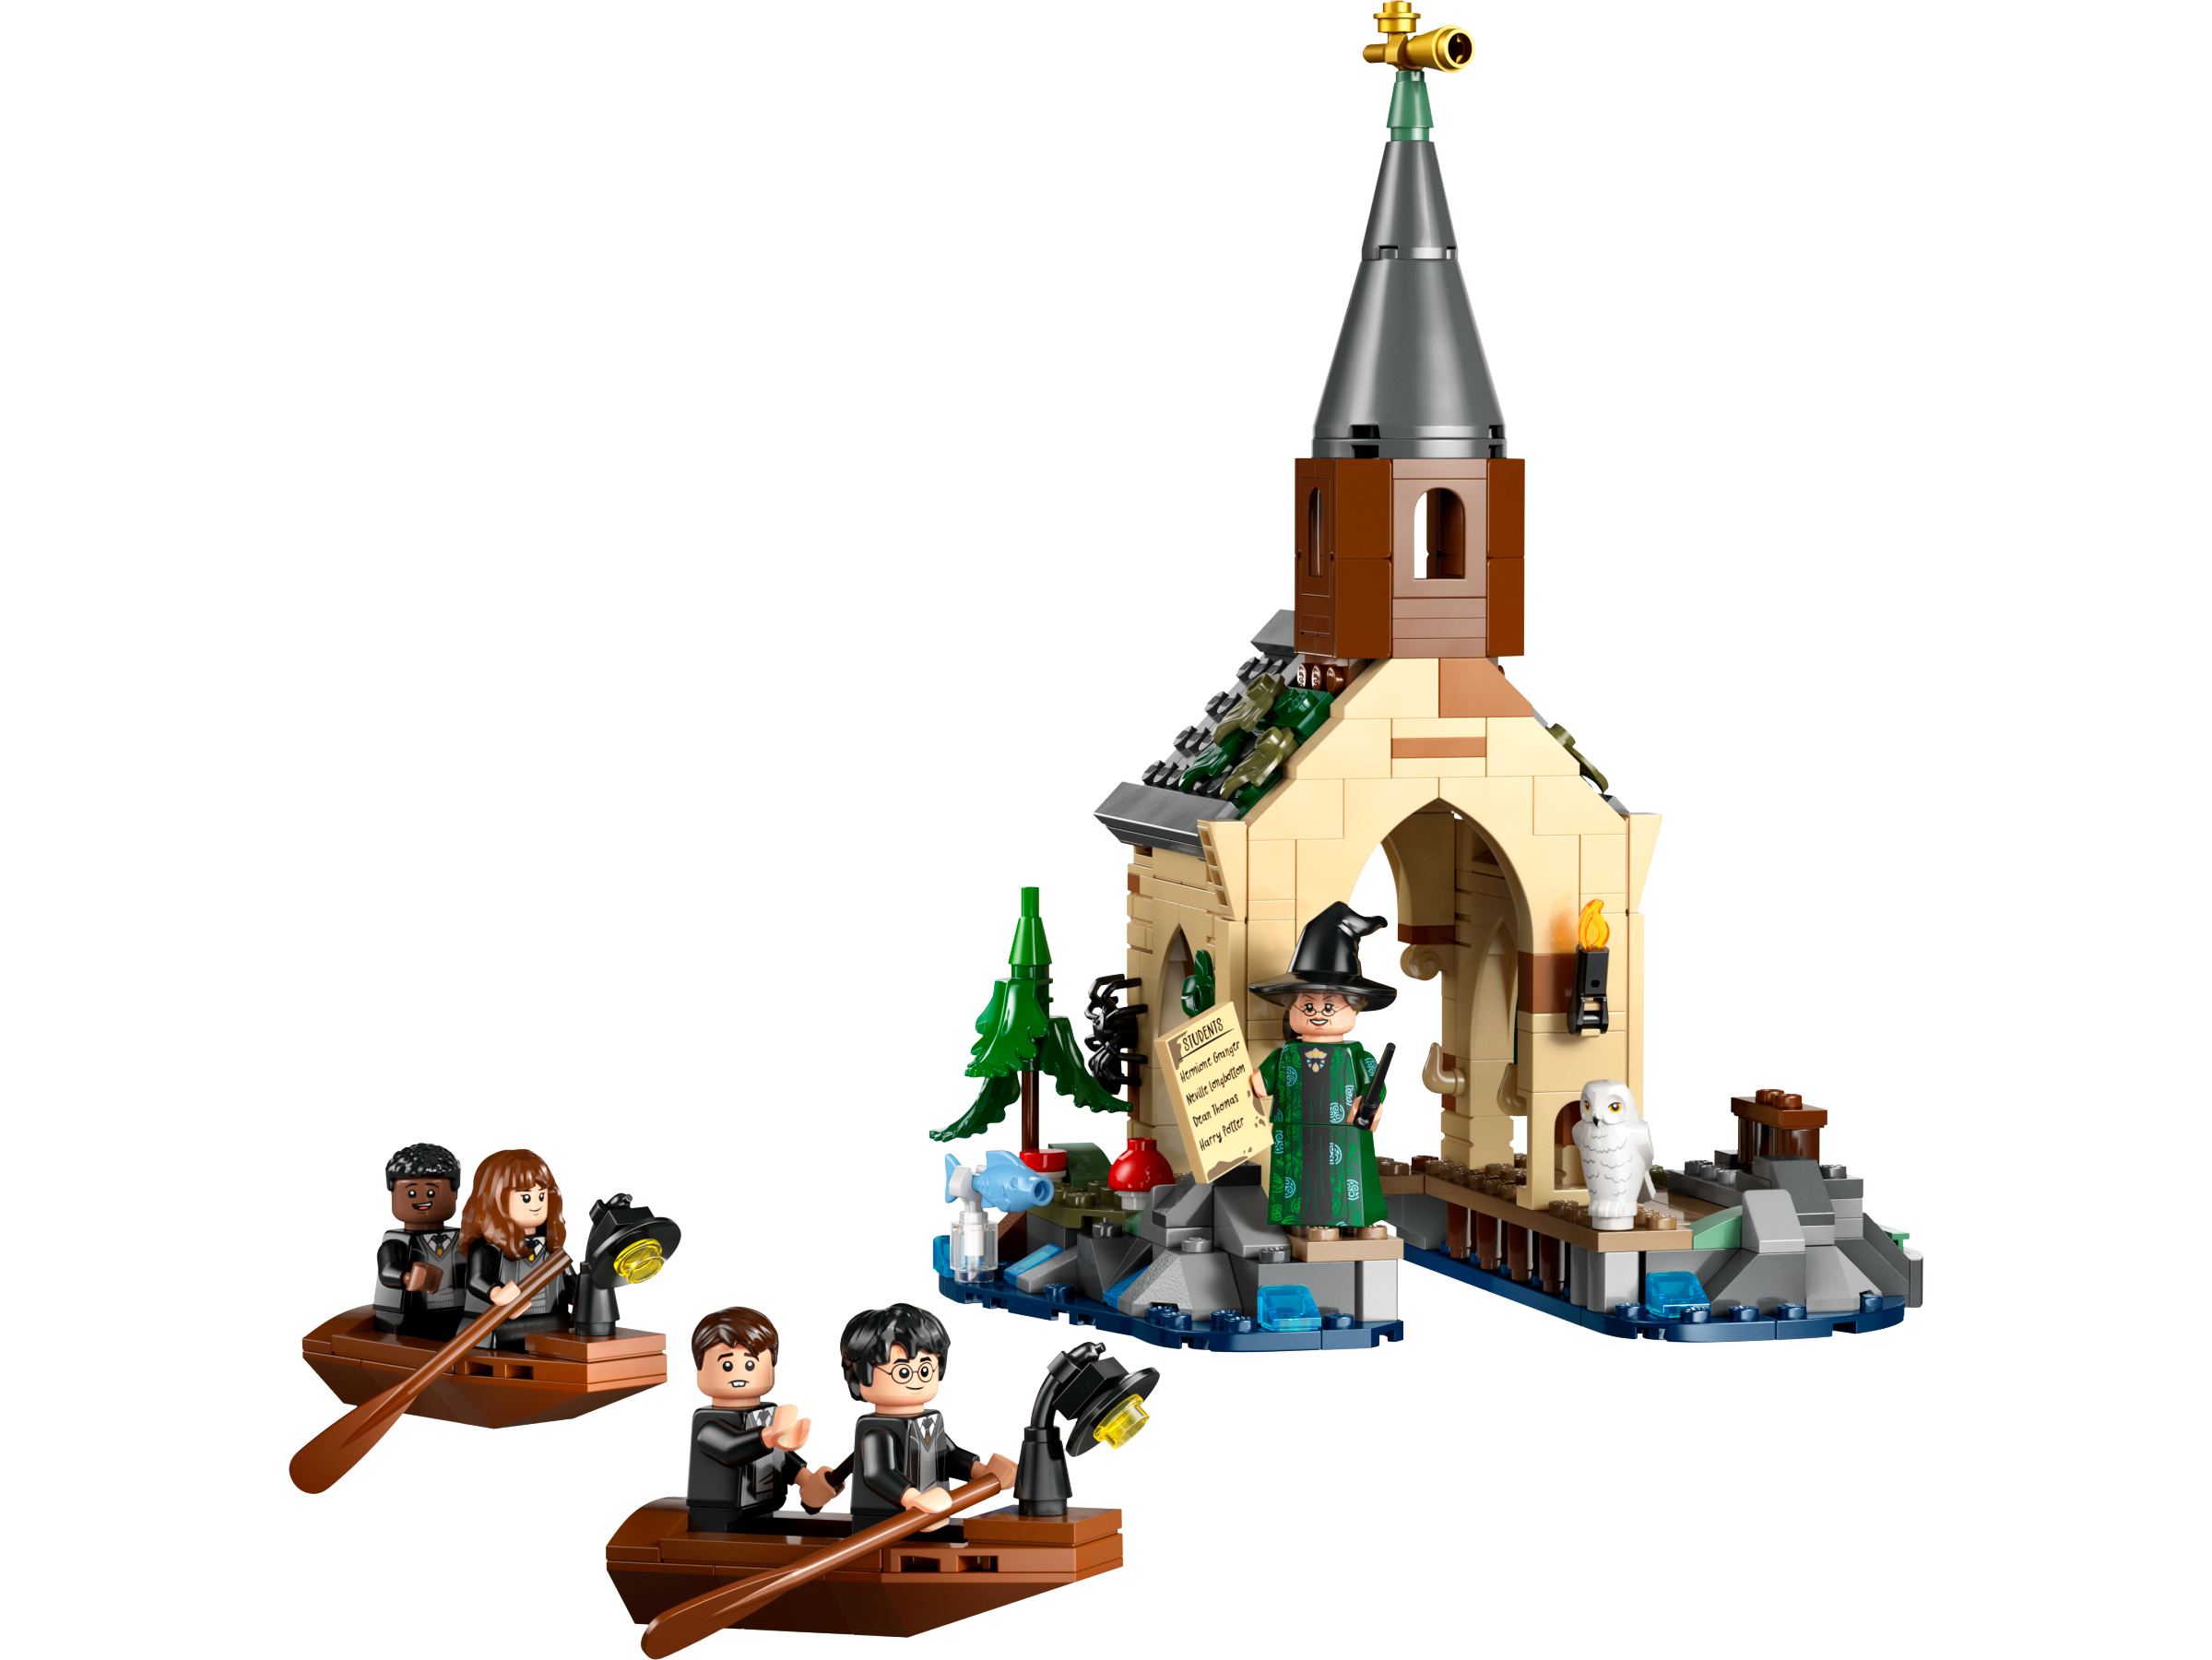 Lego 76426 Hogwarts Castle Boathouse